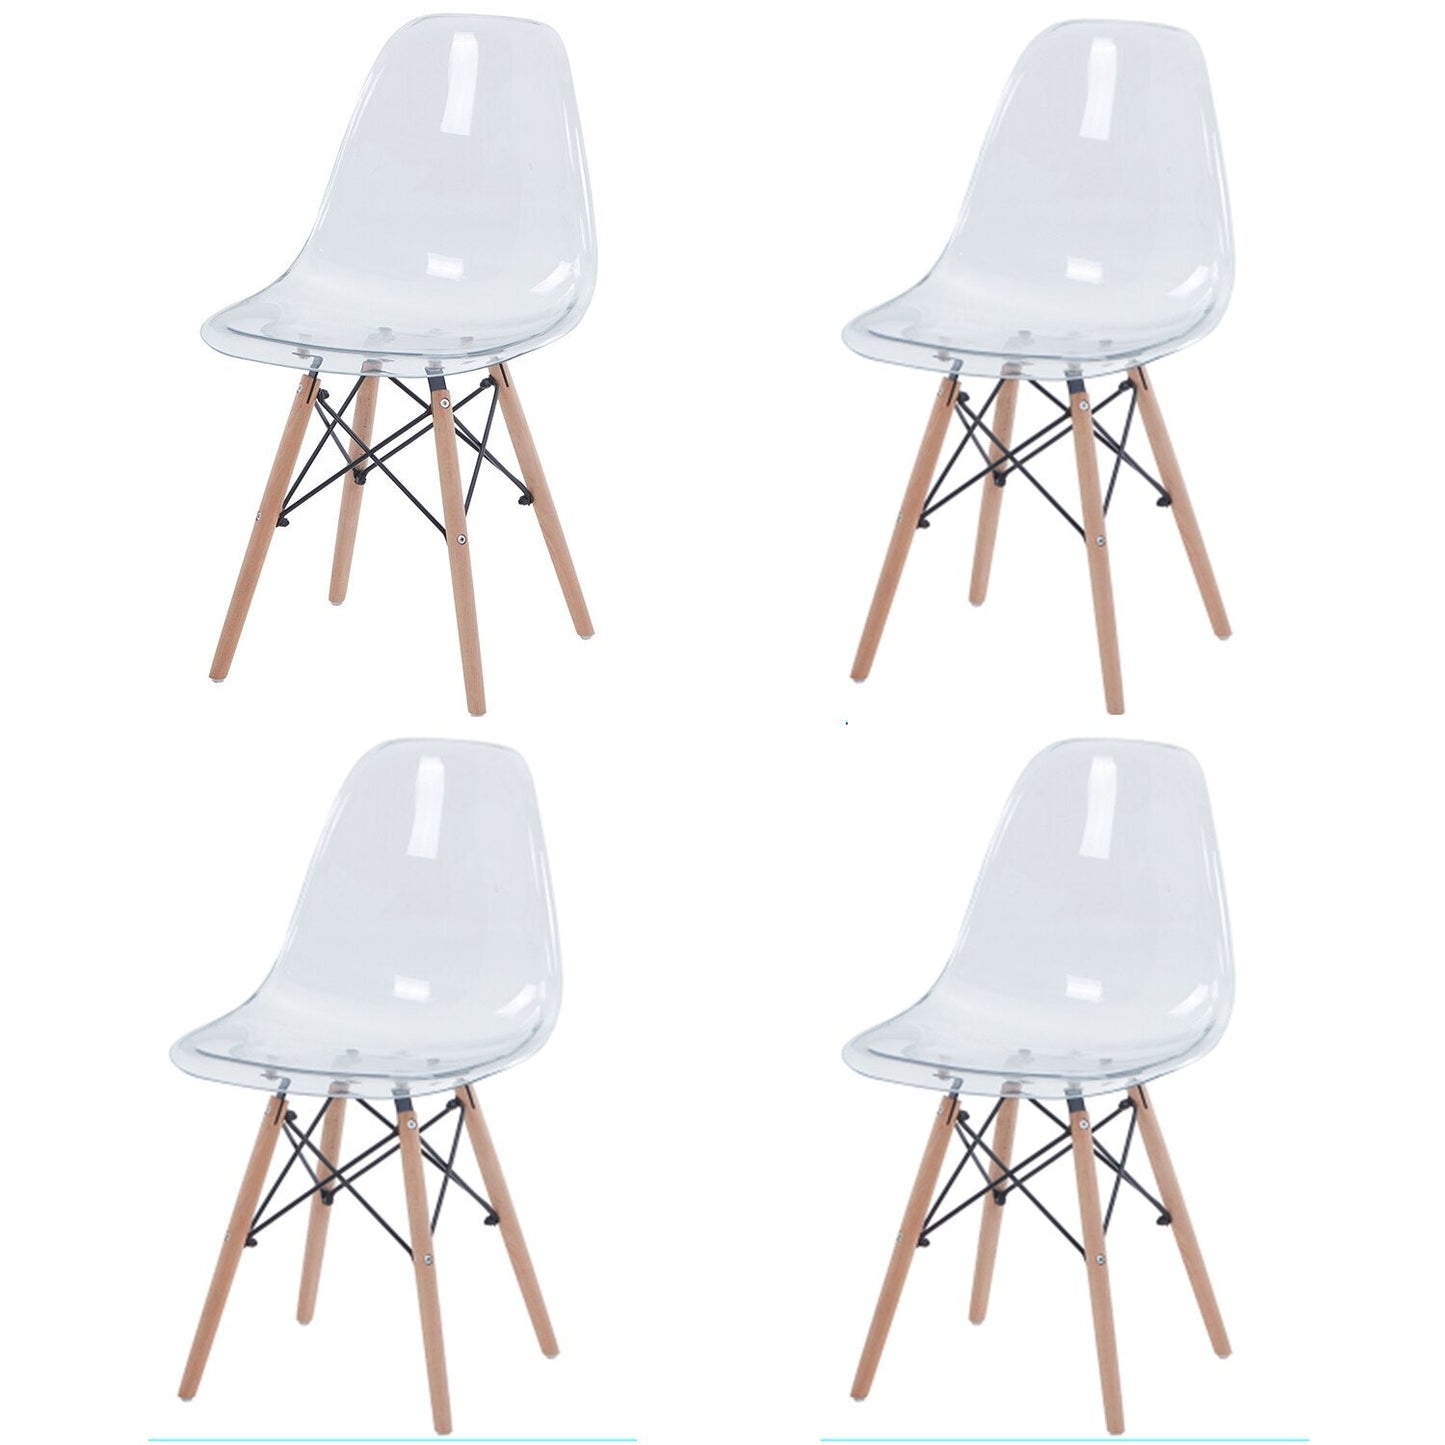 Chaises fantômes transparentes et modernes, chaises fantômes en bois massif et cristal pour événements